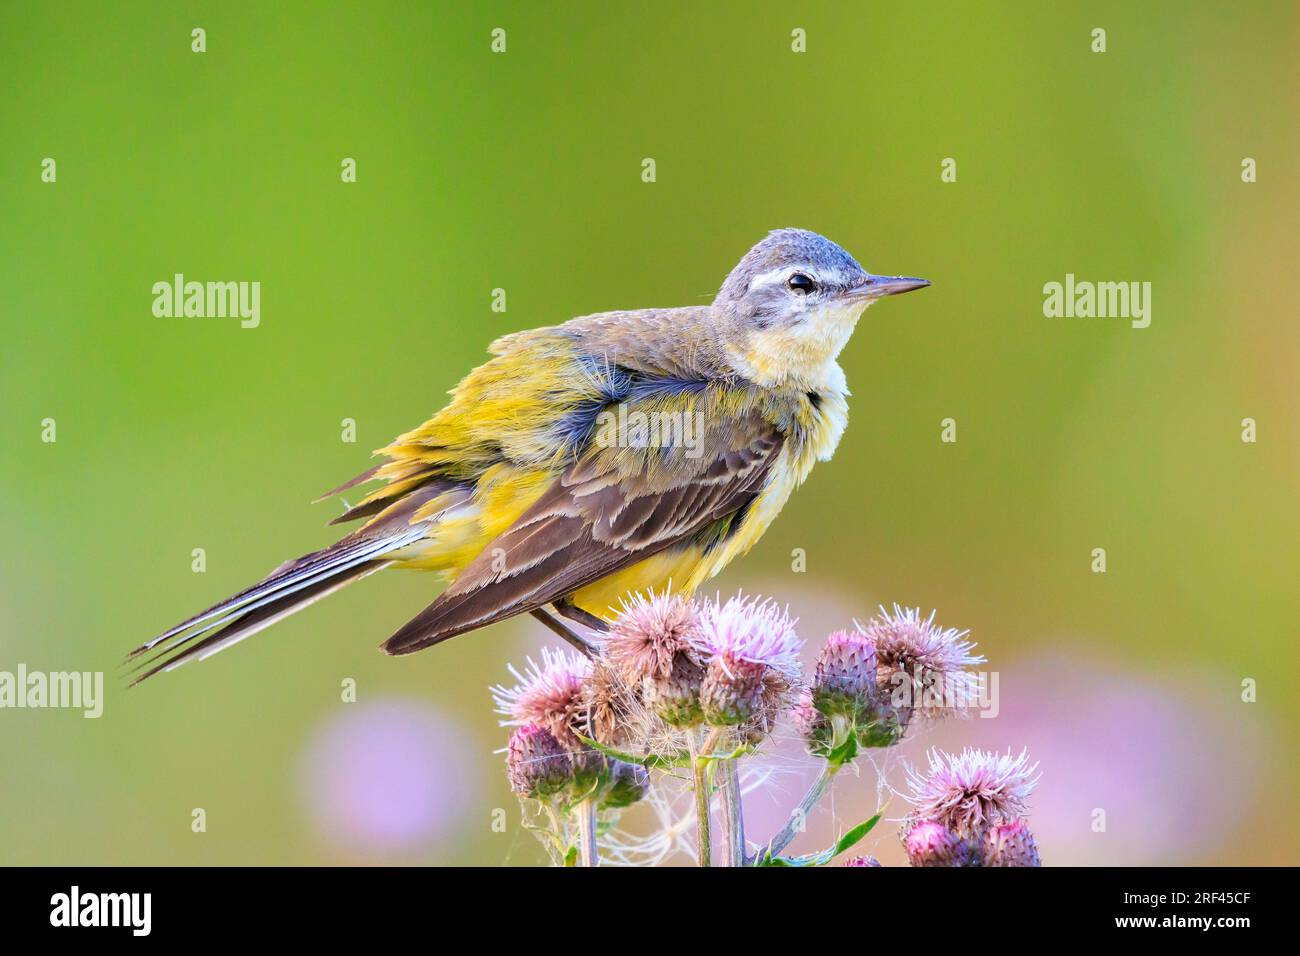 Nahaufnahme eines gelben Wagtail-Vogels Motacilla Flava, der an einem sonnigen Tag in der Sommersaison in Vegetation singt. Stockfoto